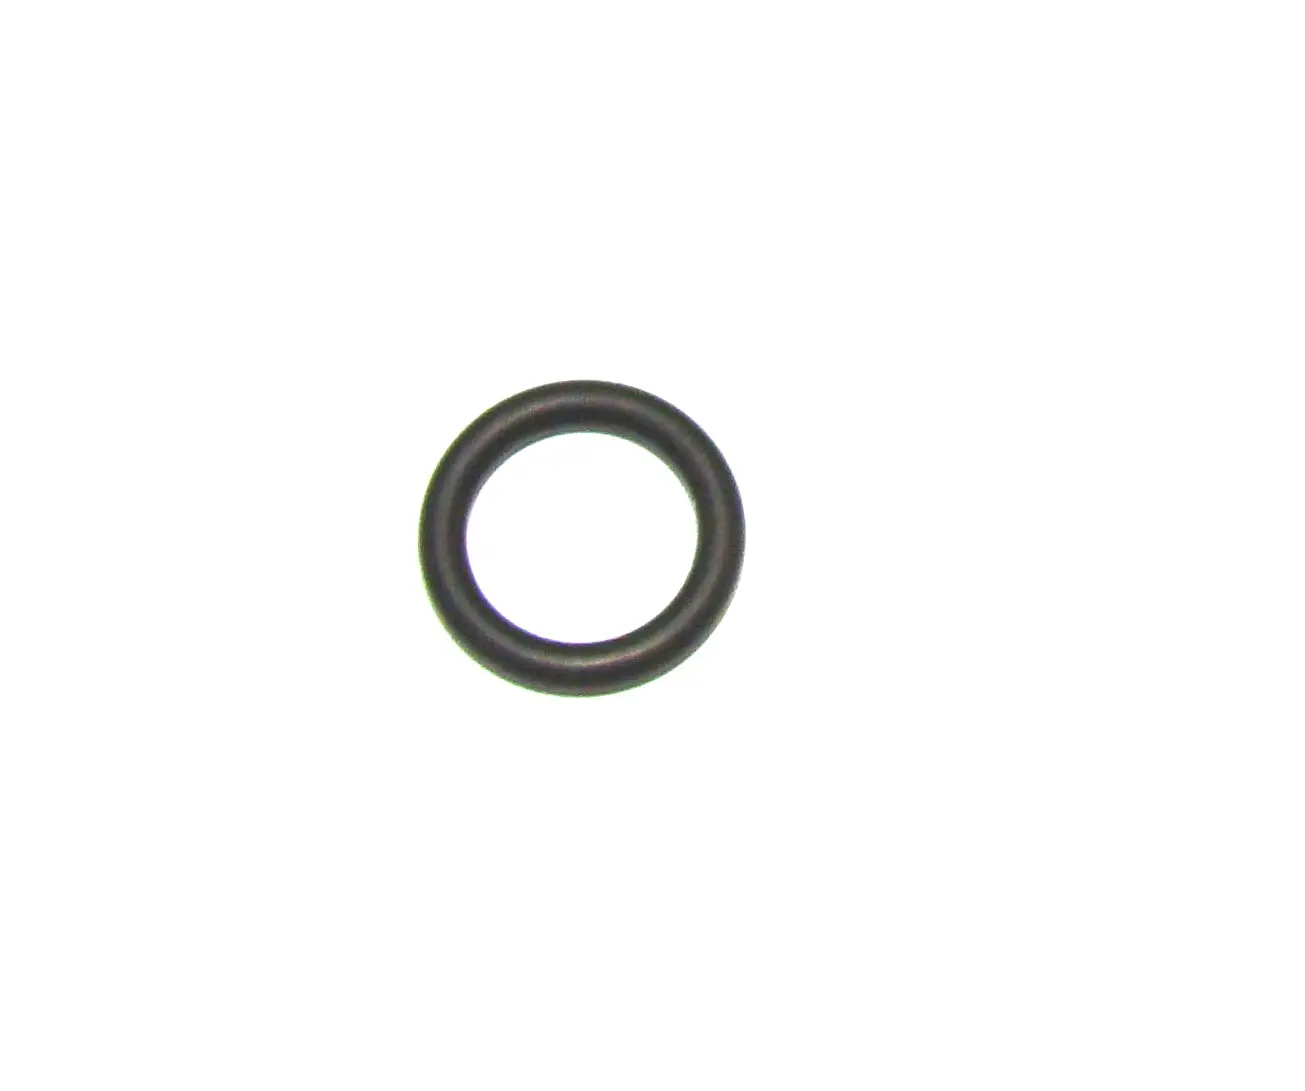 Кольцо направляющего штифта цилиндра Benelli Argo 90014200 (270W) 